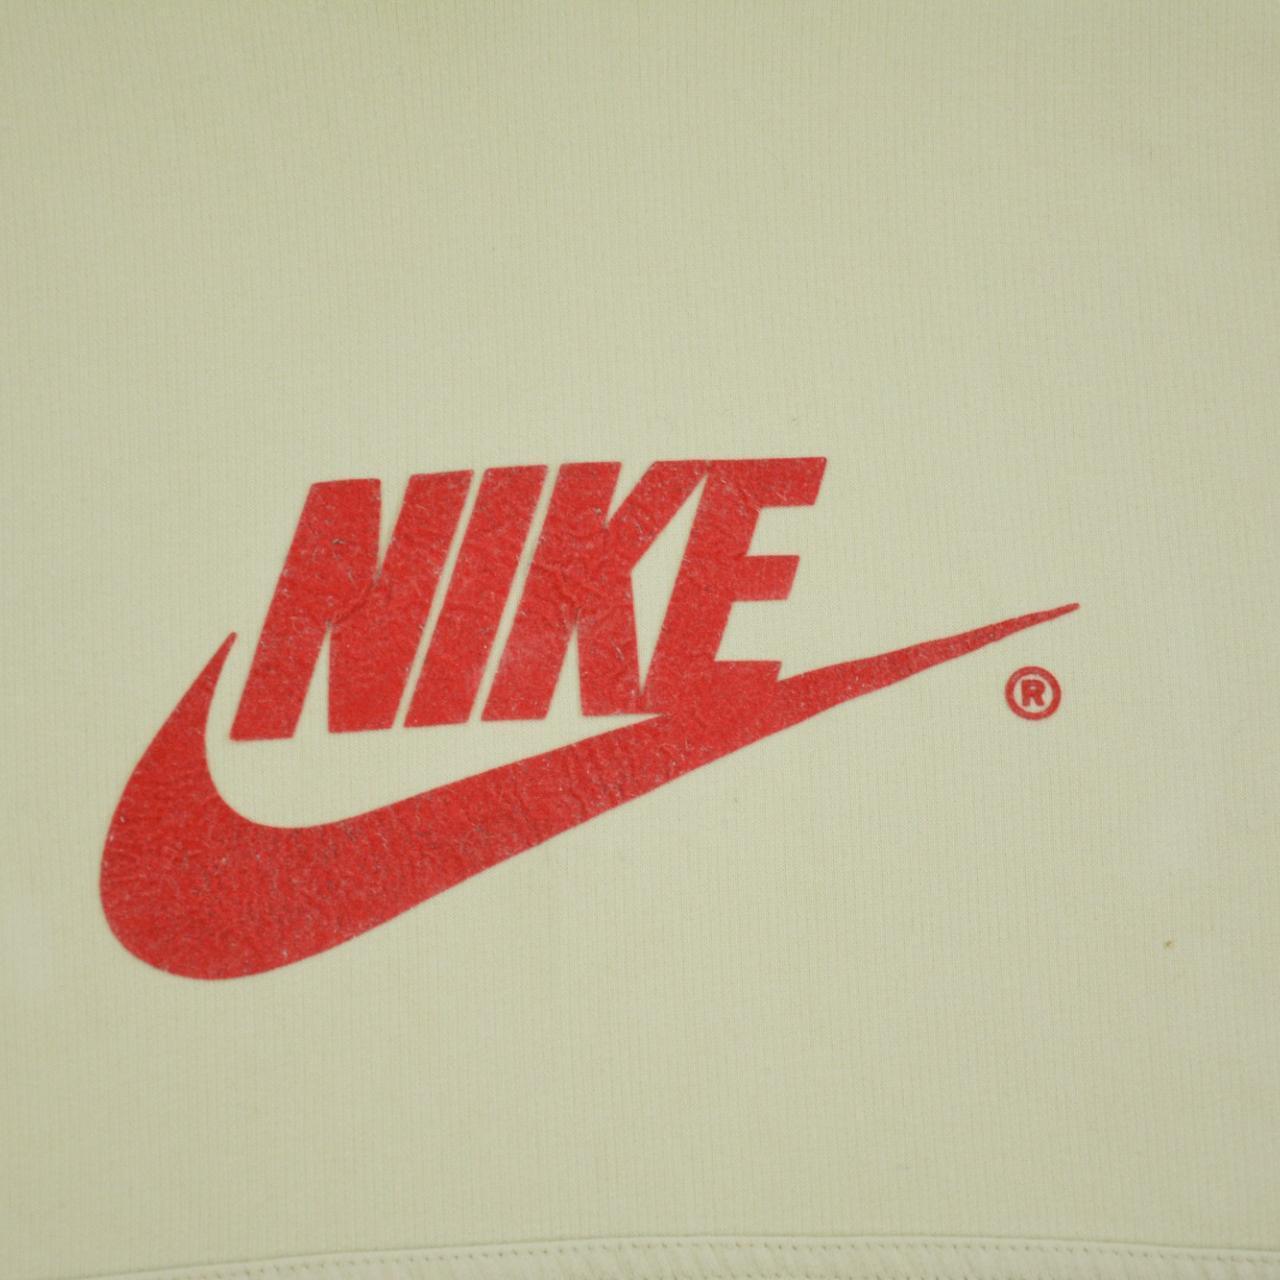 Vintage Nike Hoodie Size M - Known Source